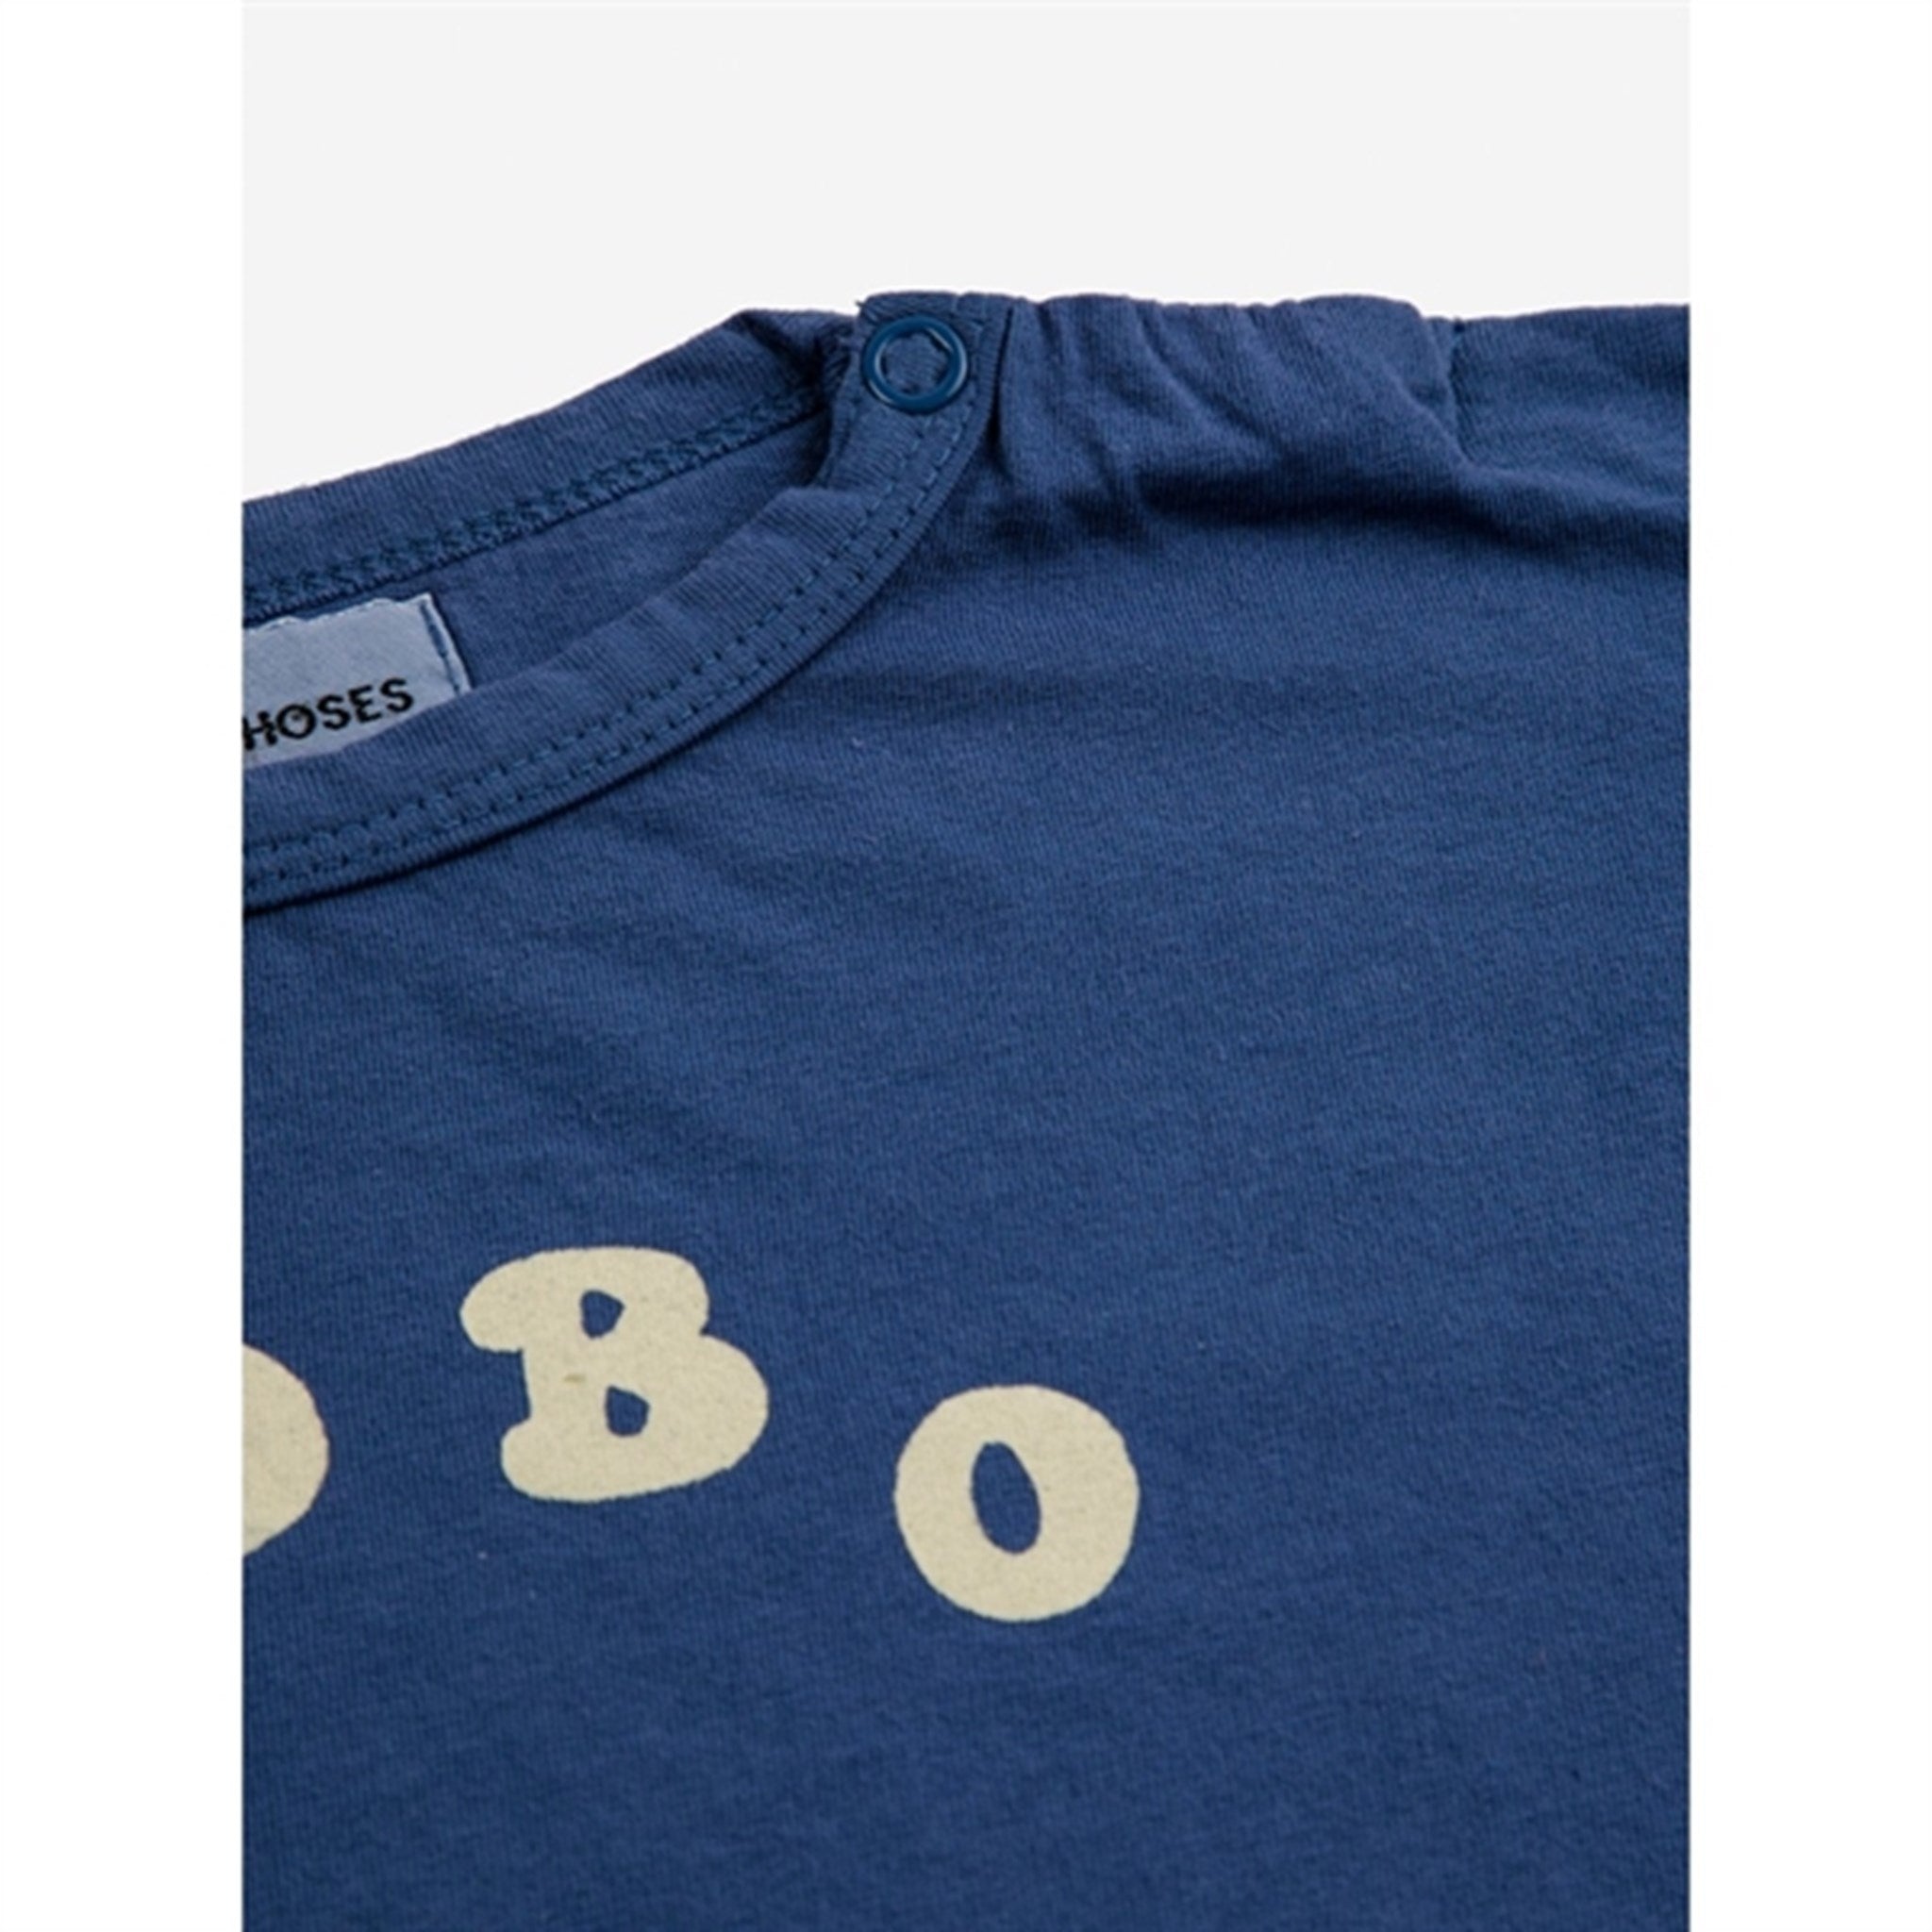 Bobo Choses Baby Bobo Choses Circle Bluse Navy Blue 2